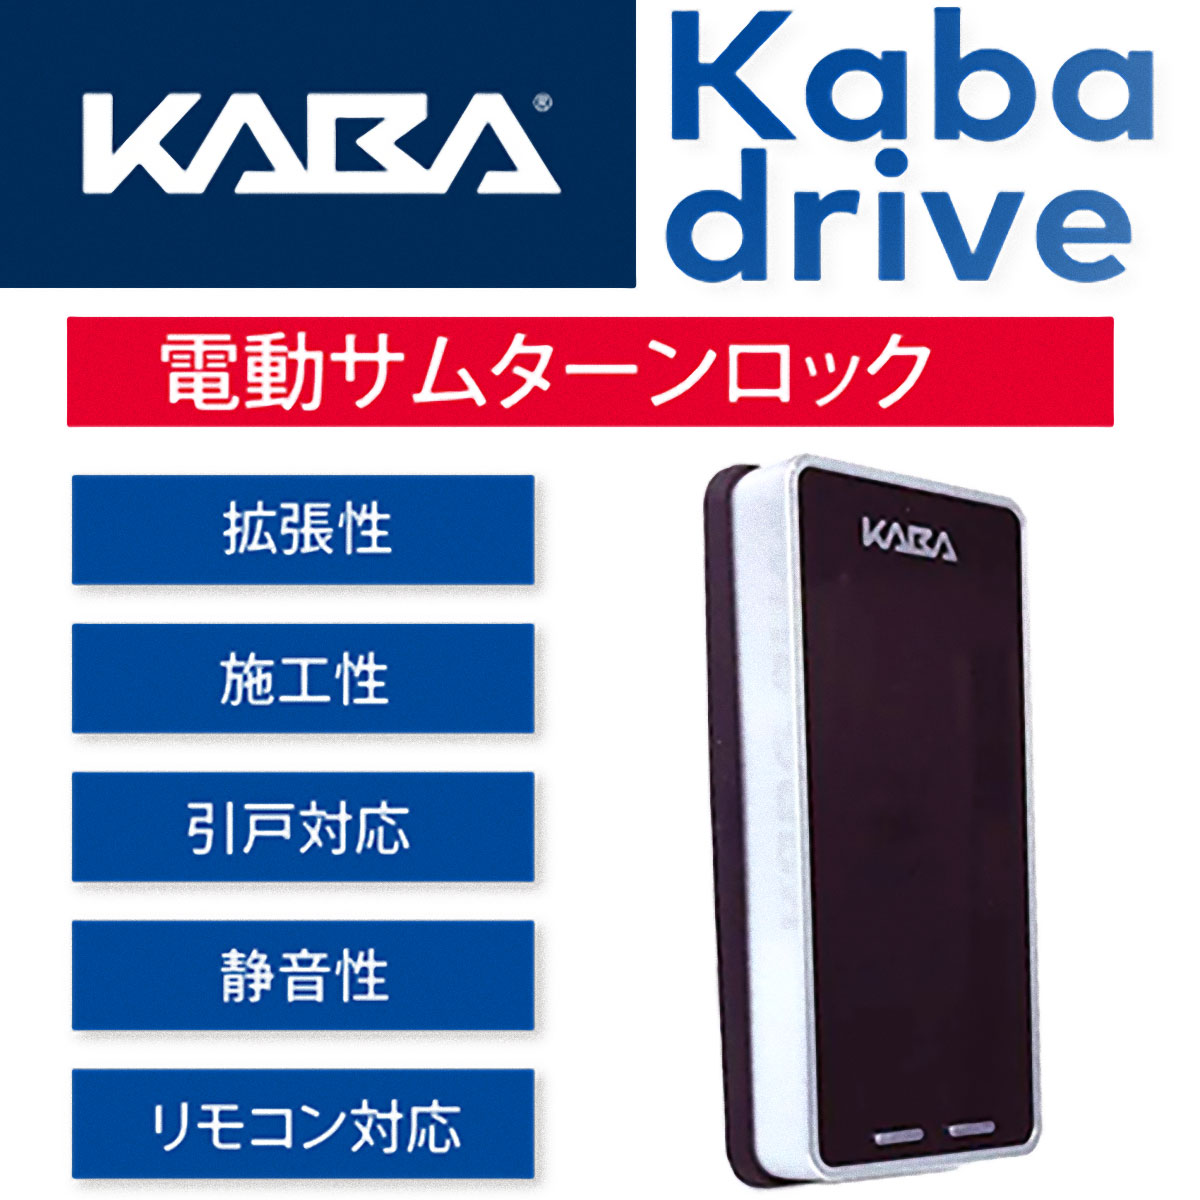 KABA,カバ   カバドライブ電動サムターンロック Kaba drive